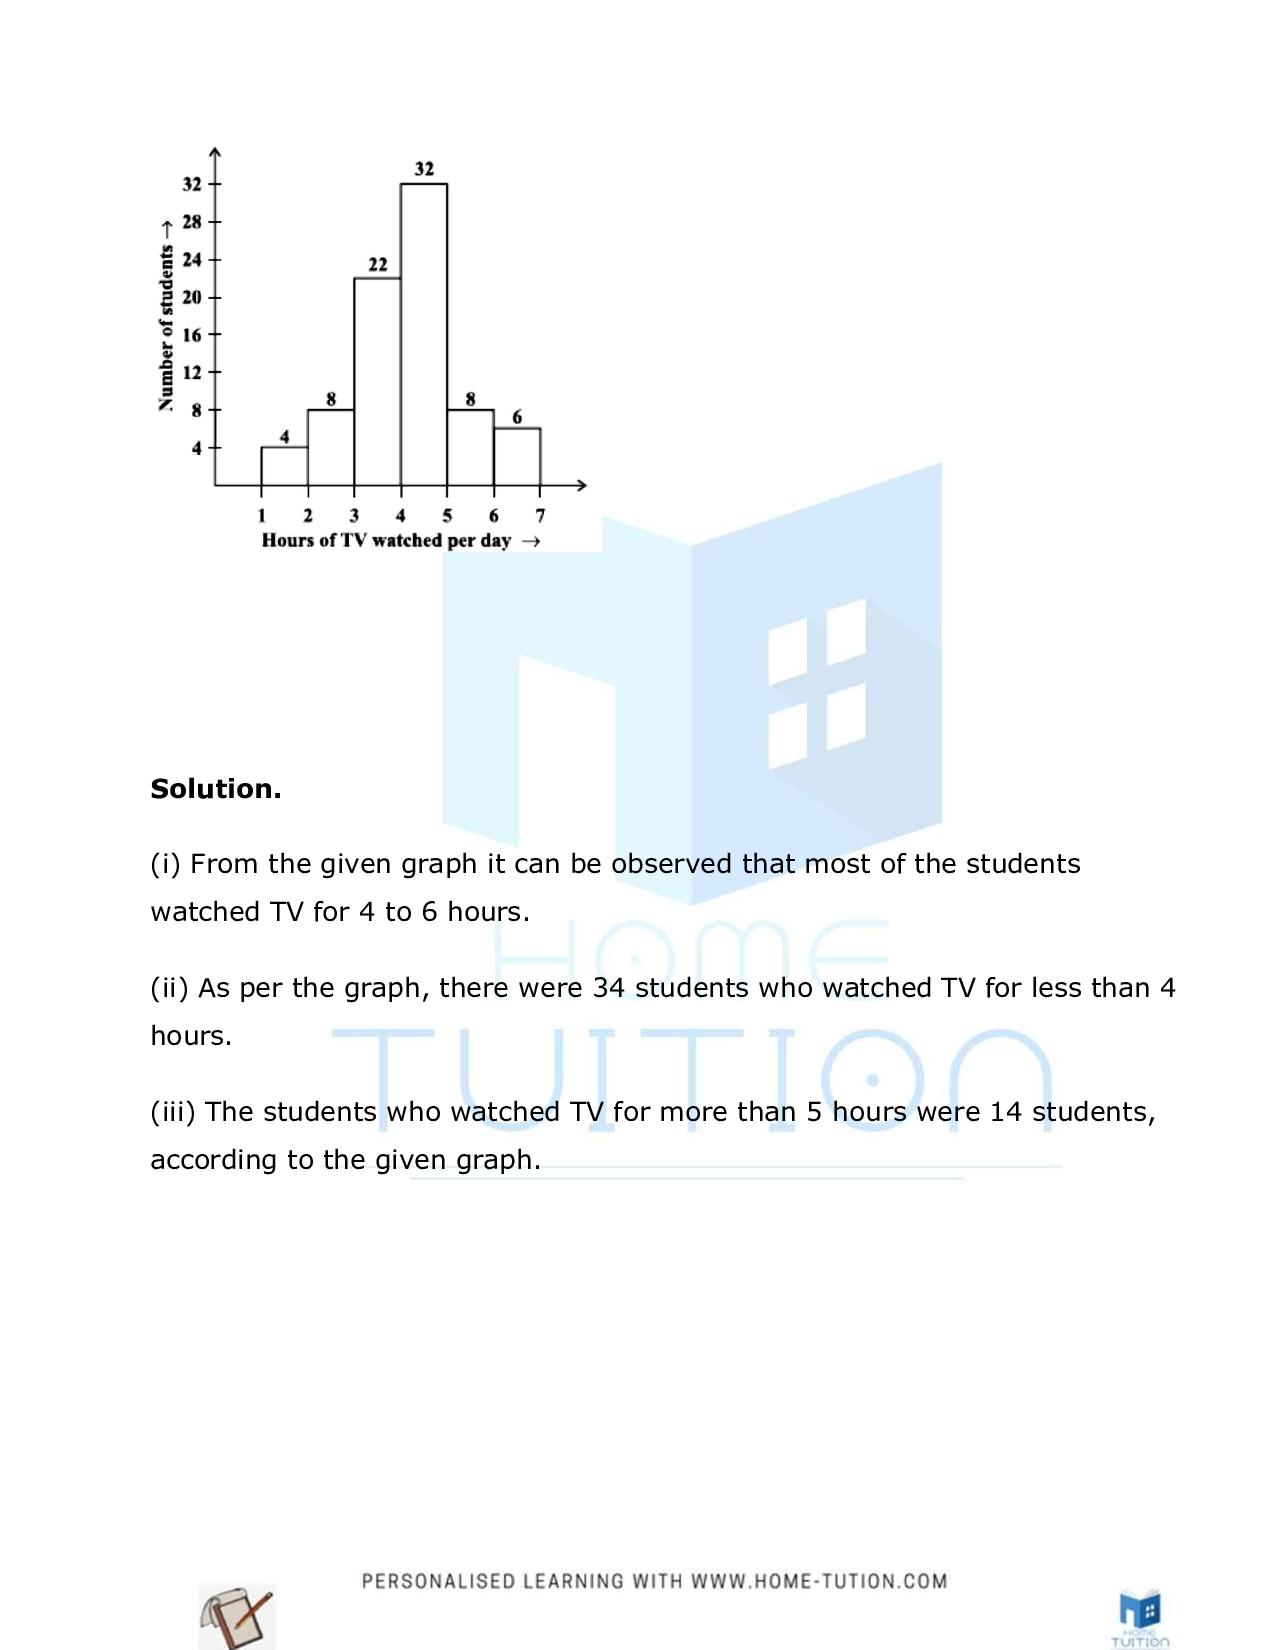 Class 8 Maths Chapter 5 Data Handling